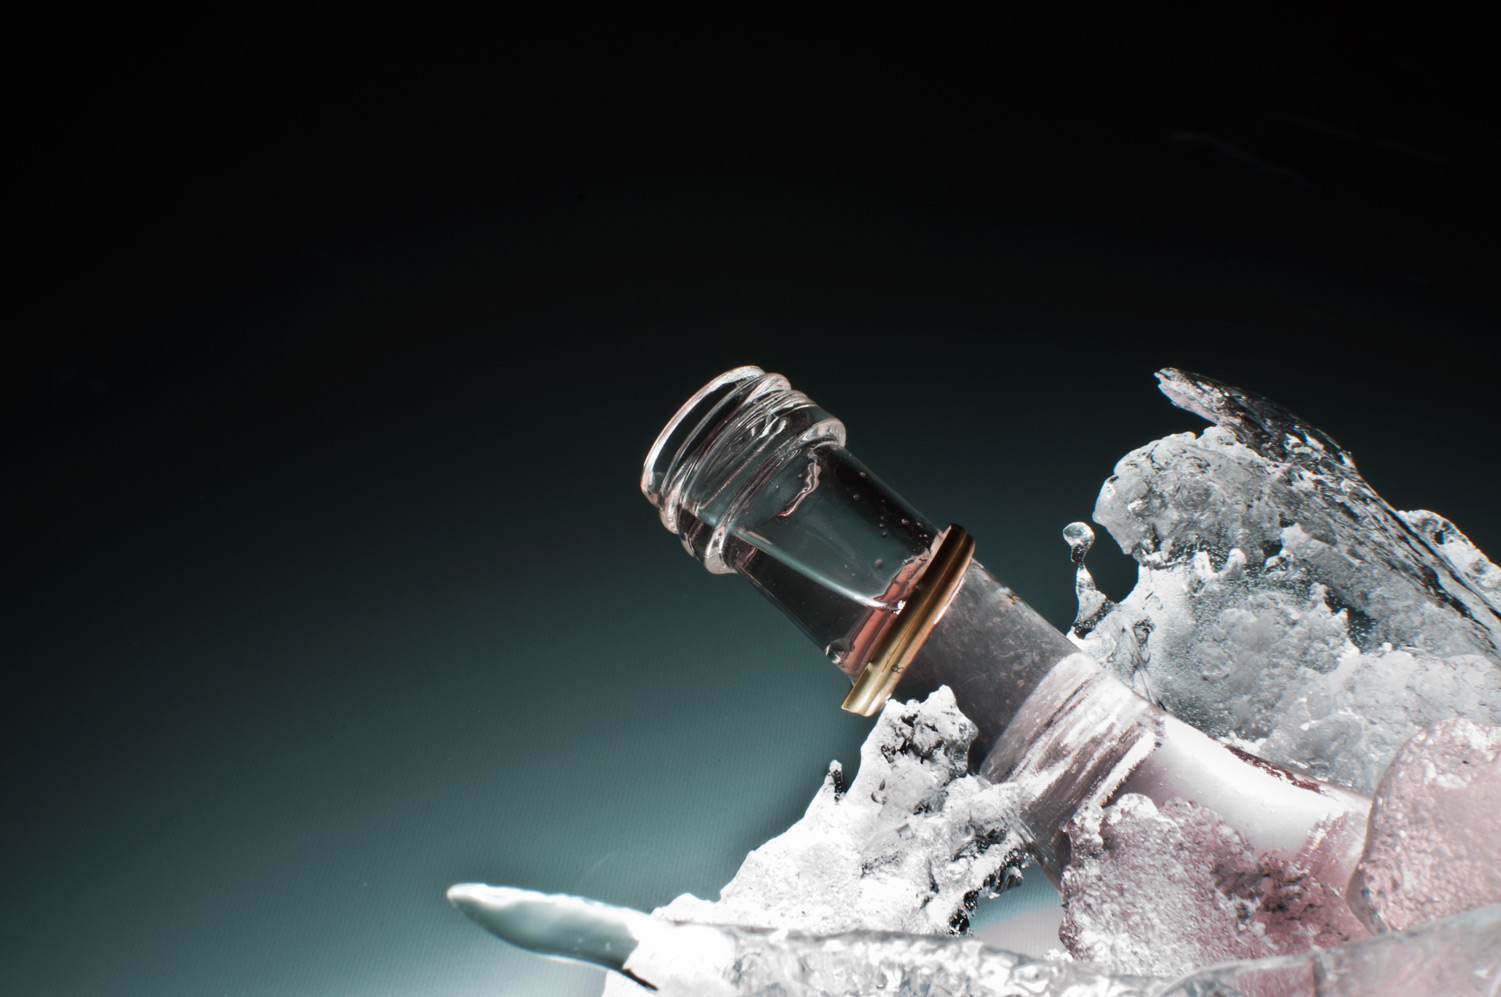 bouteille prise dans la glace, nicolas dechef, infographiste & photographe, Charleroi & Namur (Walcourt)